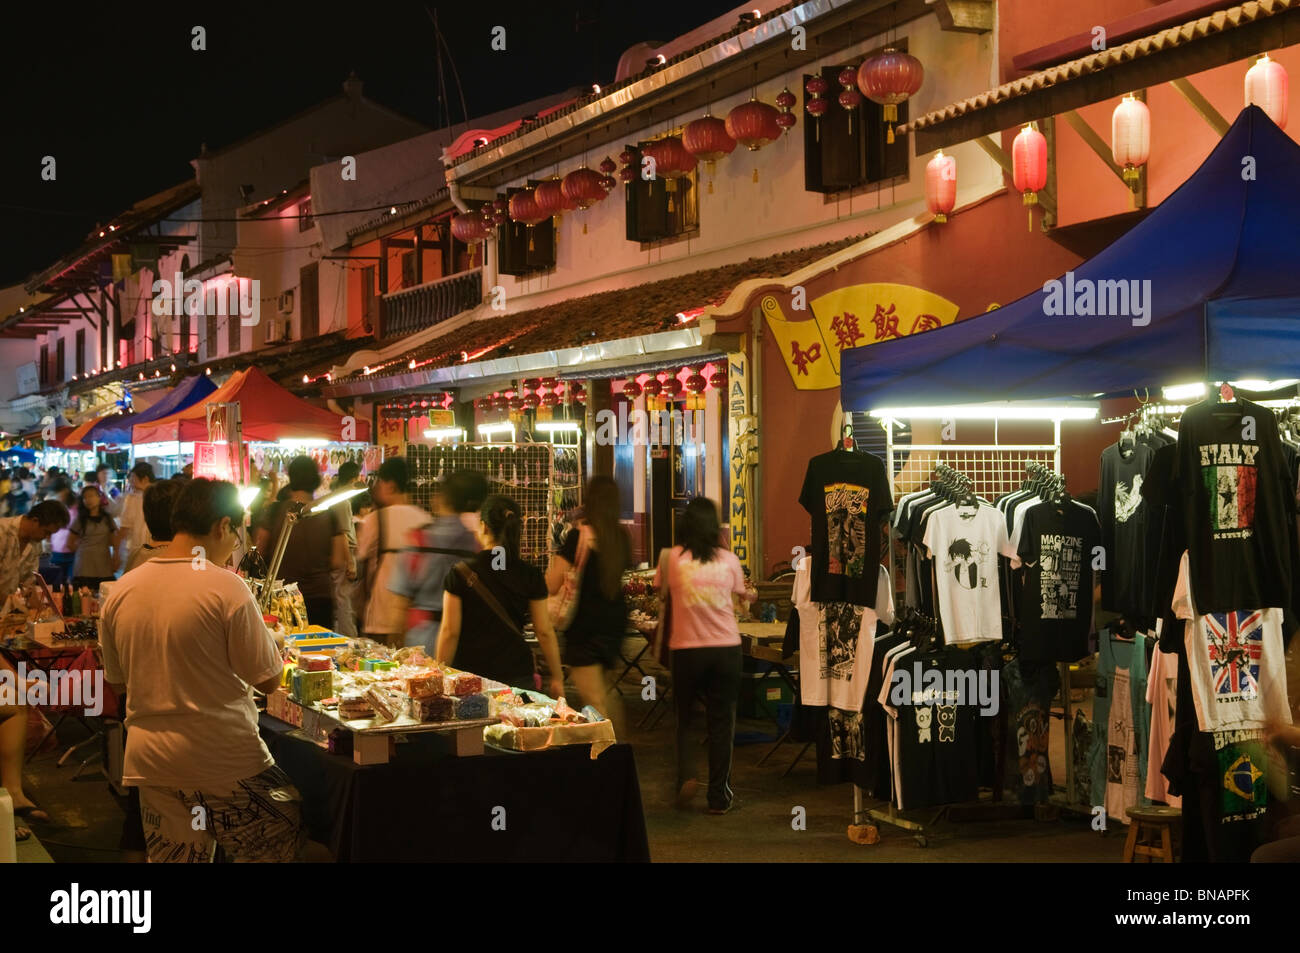 Jonker Street night market Malacca Melaka Malaysia Stock Photo